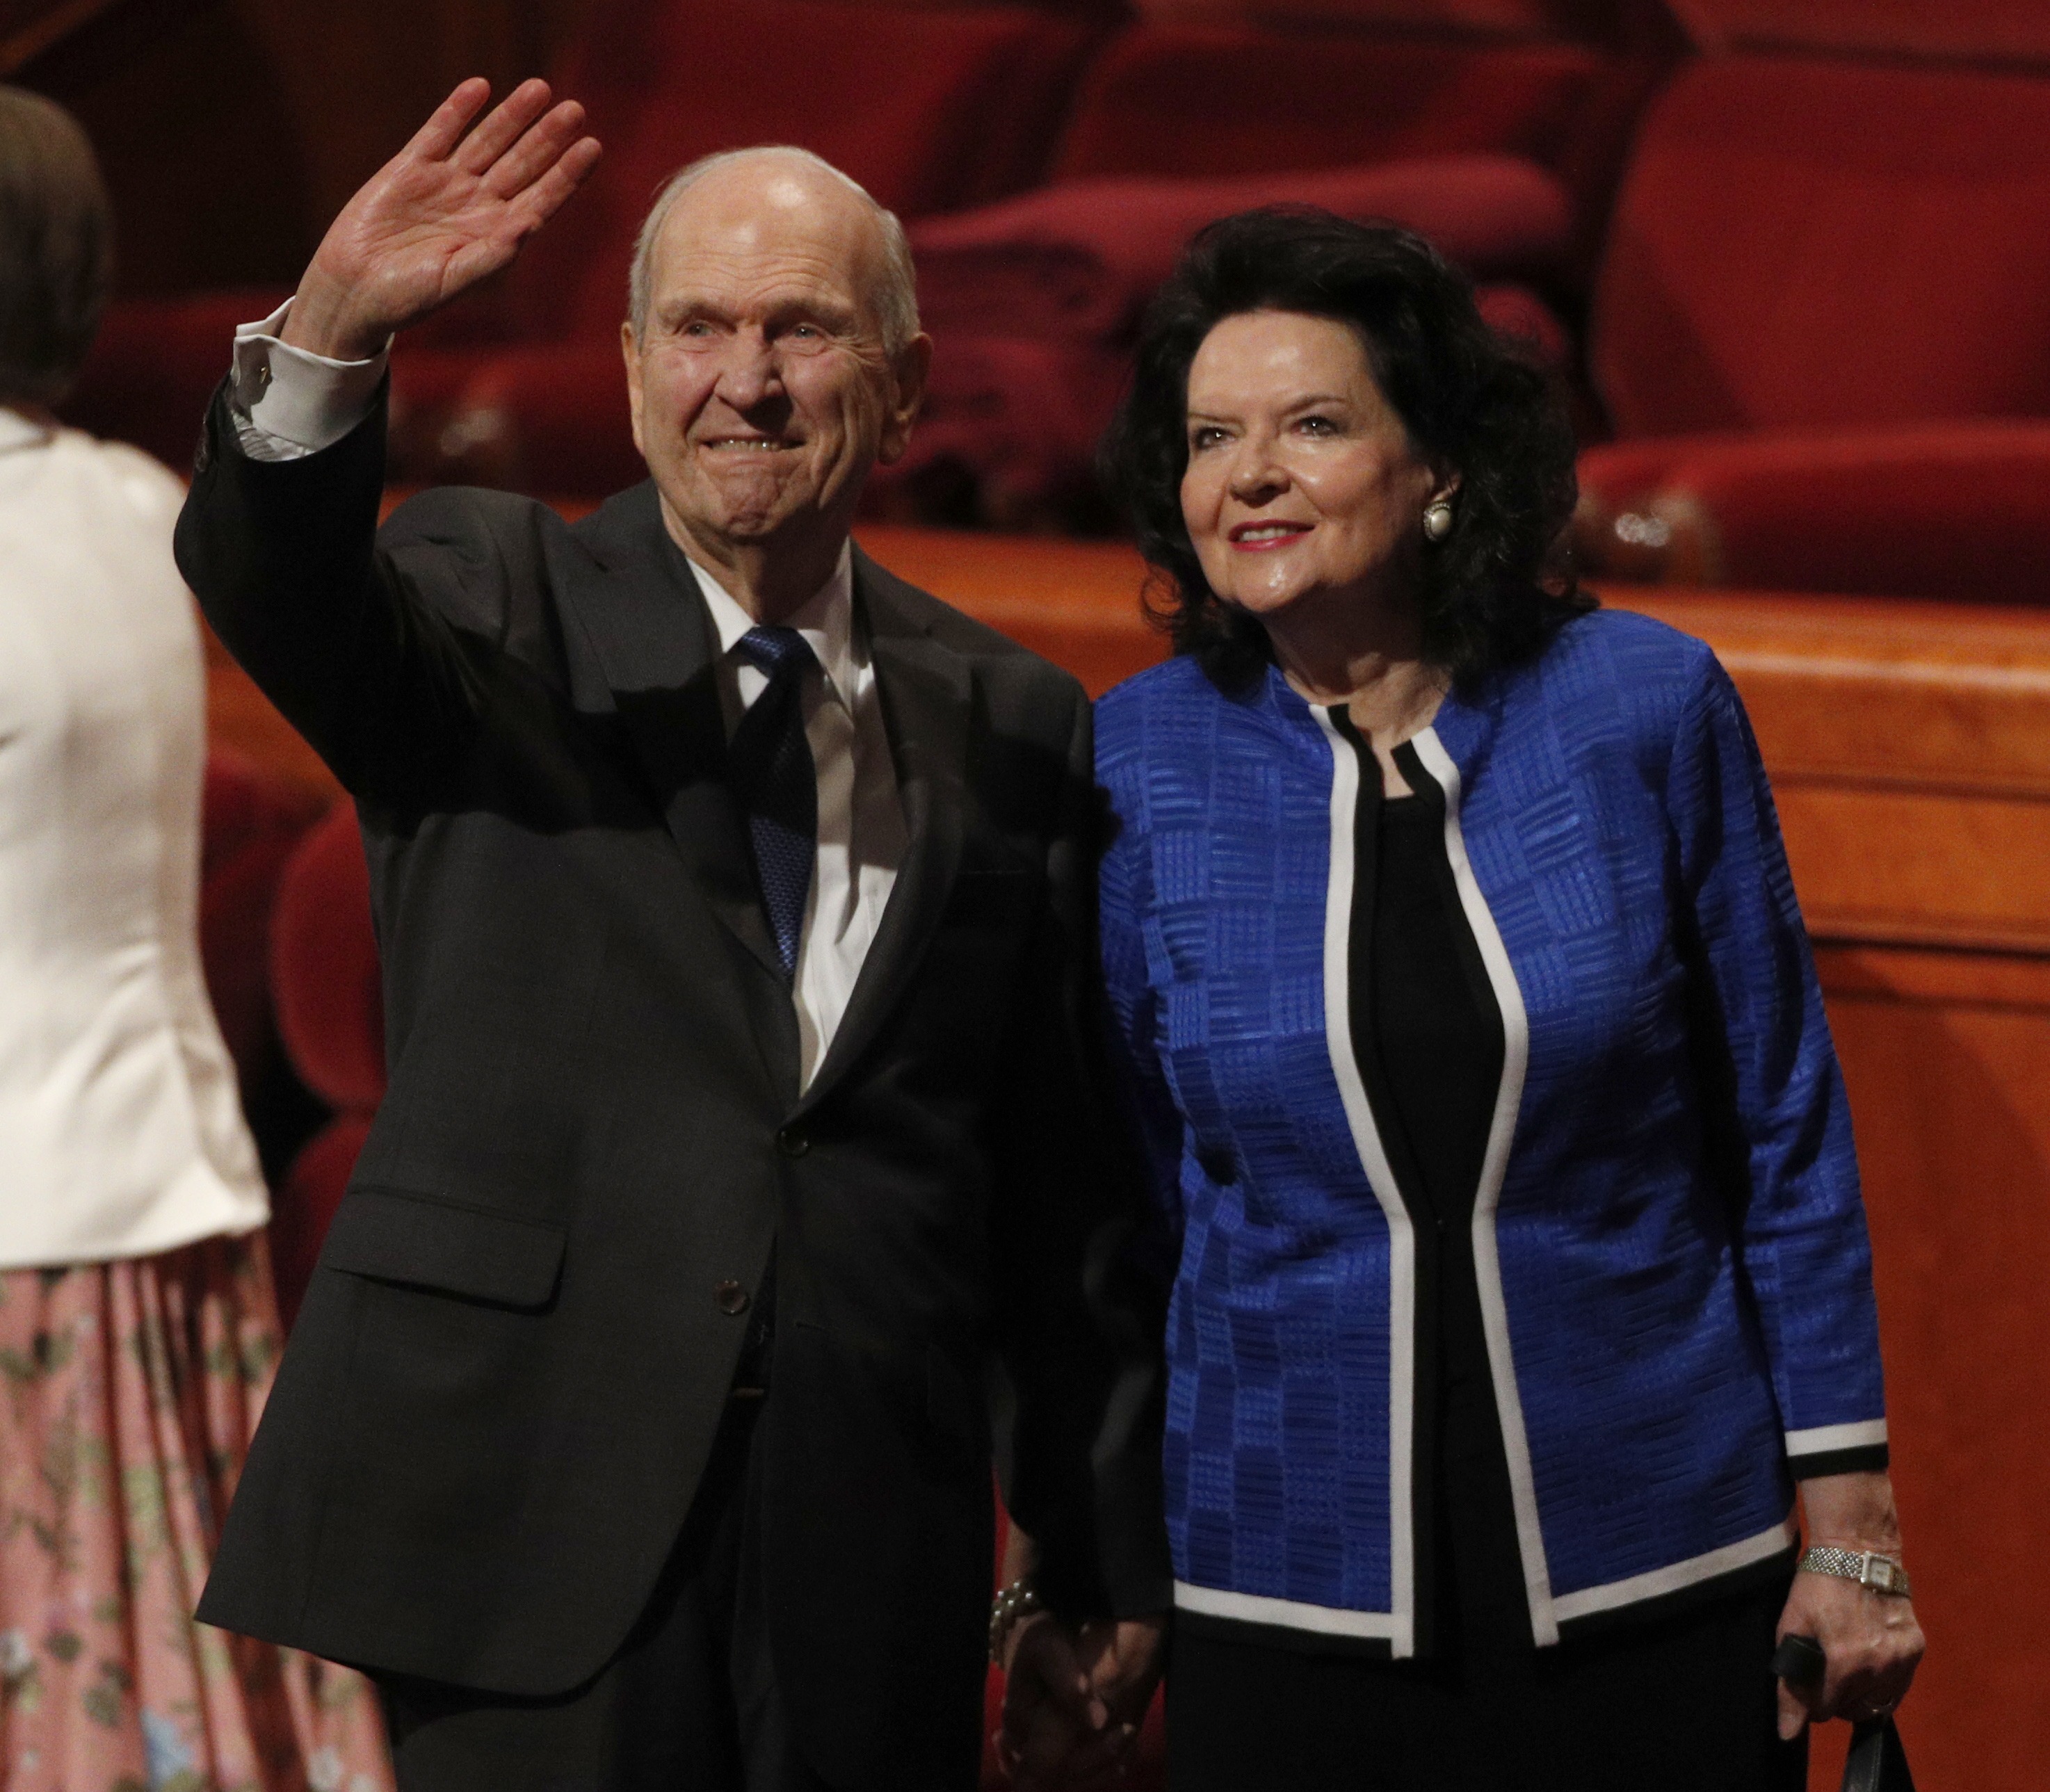 A mormon egyház 93 éves vezetője isteni sugallatra eldöntötte, hogy többet nem lehet mormonoknak hívni őket